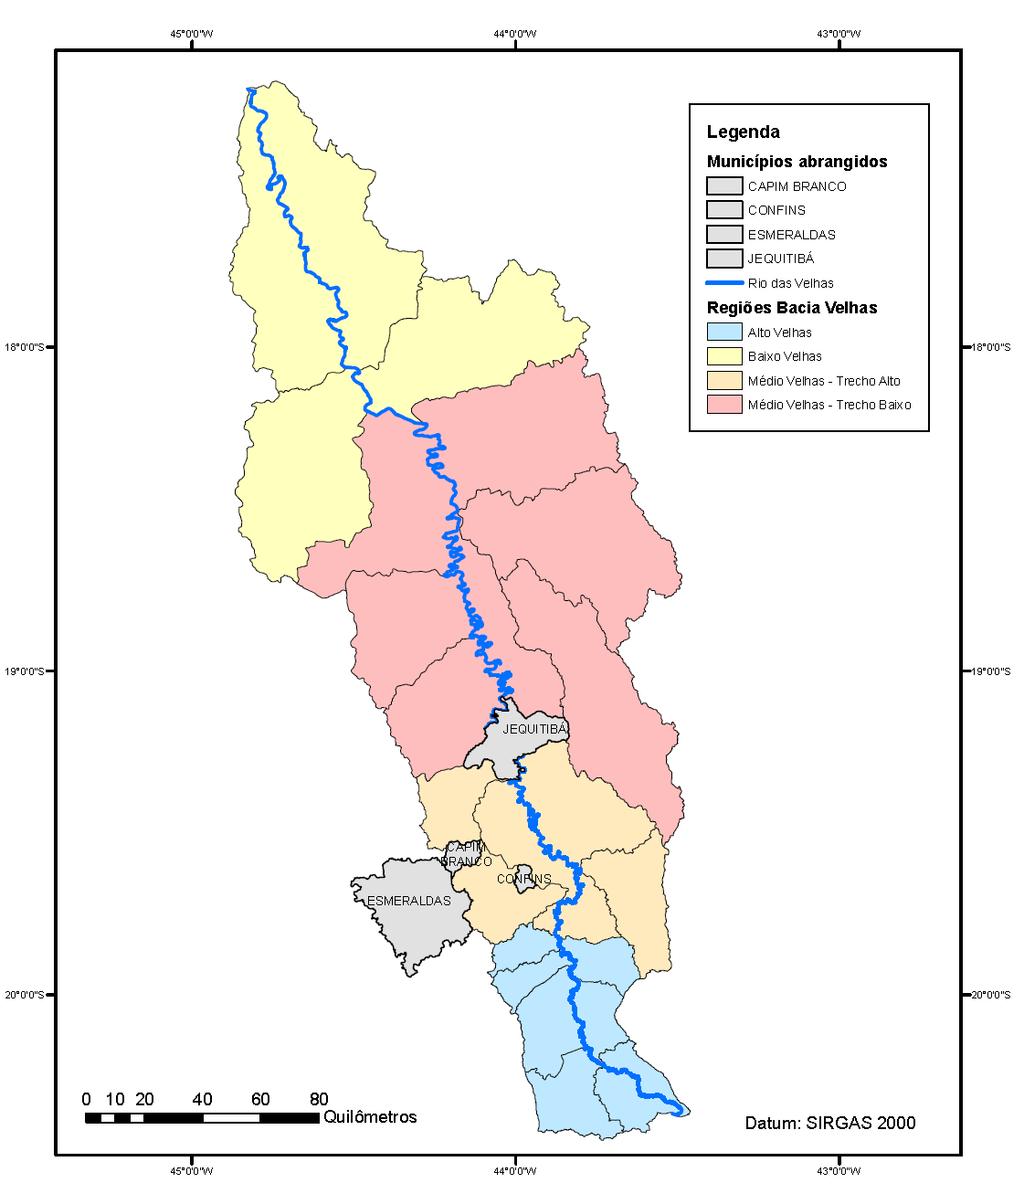 Contrato de Gestão IGAM nº 003/2017 - Ato Convocatório nº 001/2018 47 No mapa da Figura 02 é apresentada a bacia hidrográfica do Rio das Velhas, com a localização dos municípios selecionados para